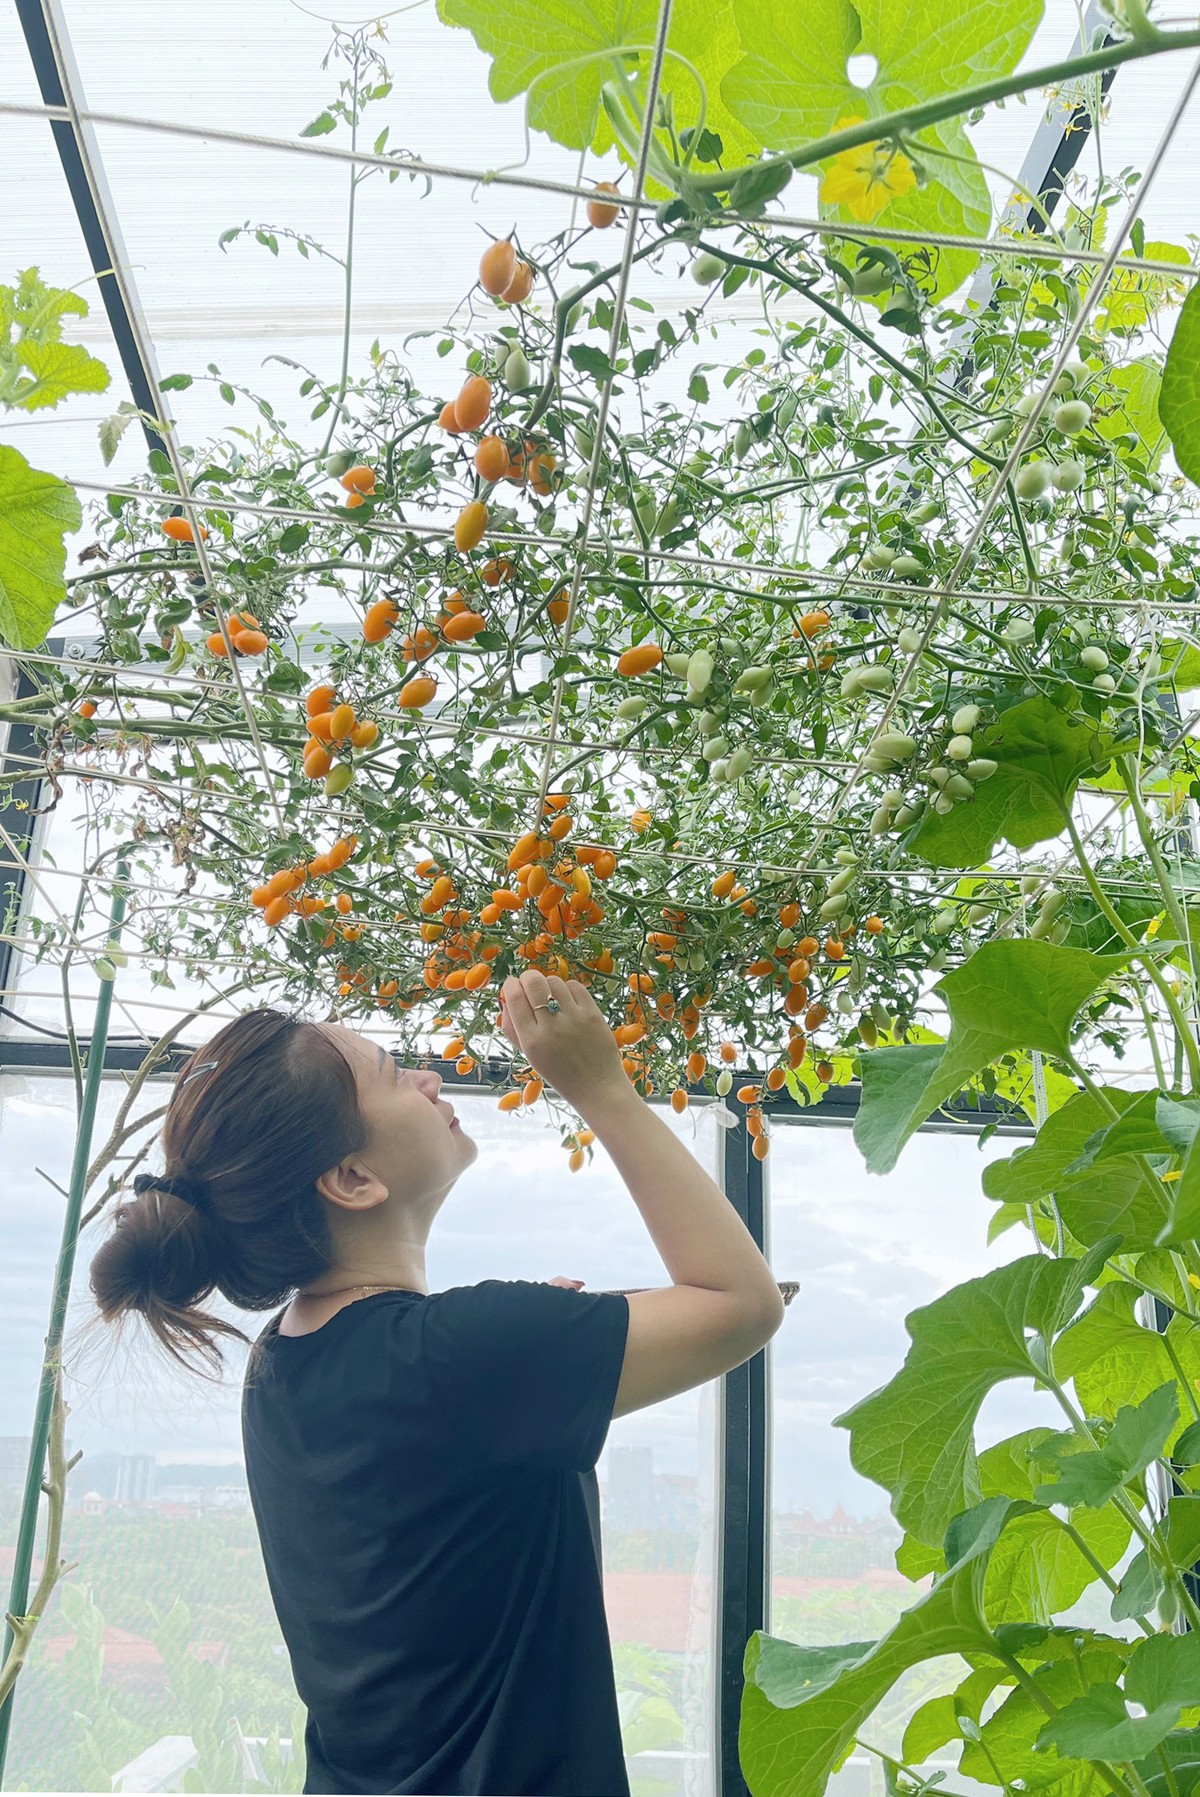 
Giàn cà chua Nova chín mọng chị Hoài Thu dùng để ăn sống, sau 5 tháng vẫn ra quả liên tục
